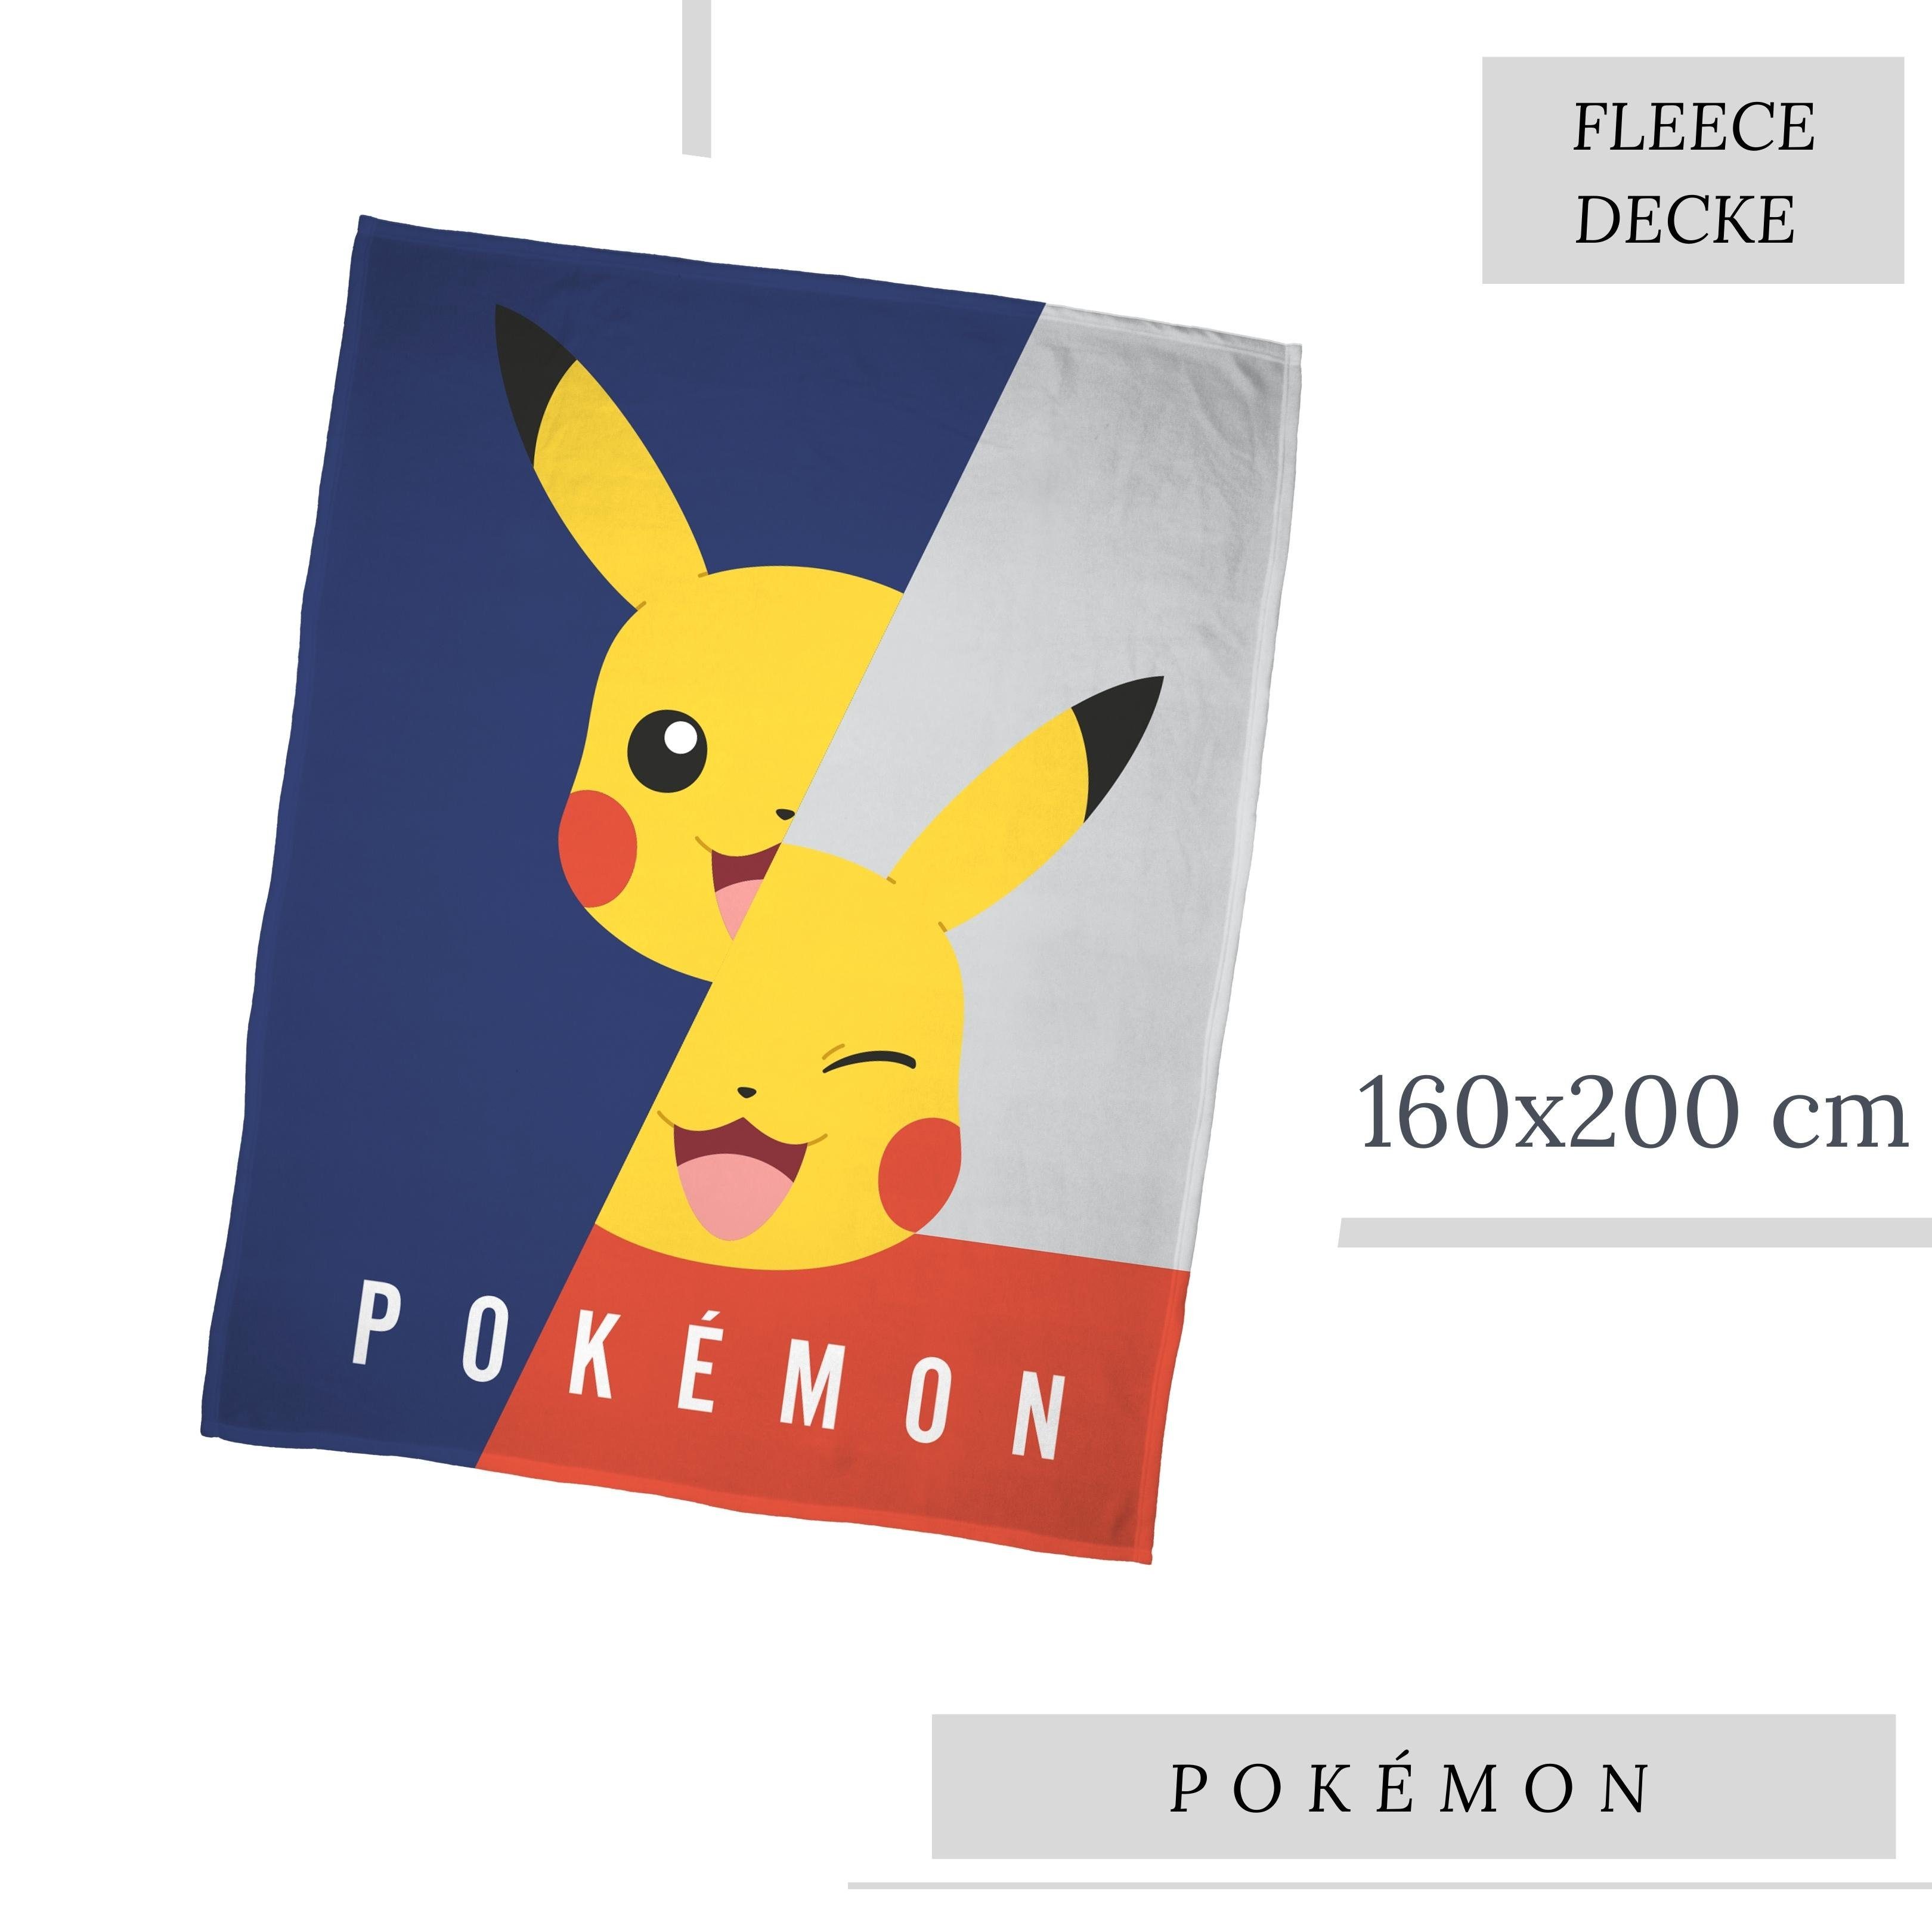 Wohndecke Pokémon 160x200 cm, weich und kuschelig, Pikachu Game / Gaming,  MTOnlinehandel, Sofadecke, Fleece-Decke, Überwurf, Plaid passend zur  Bettwäsche